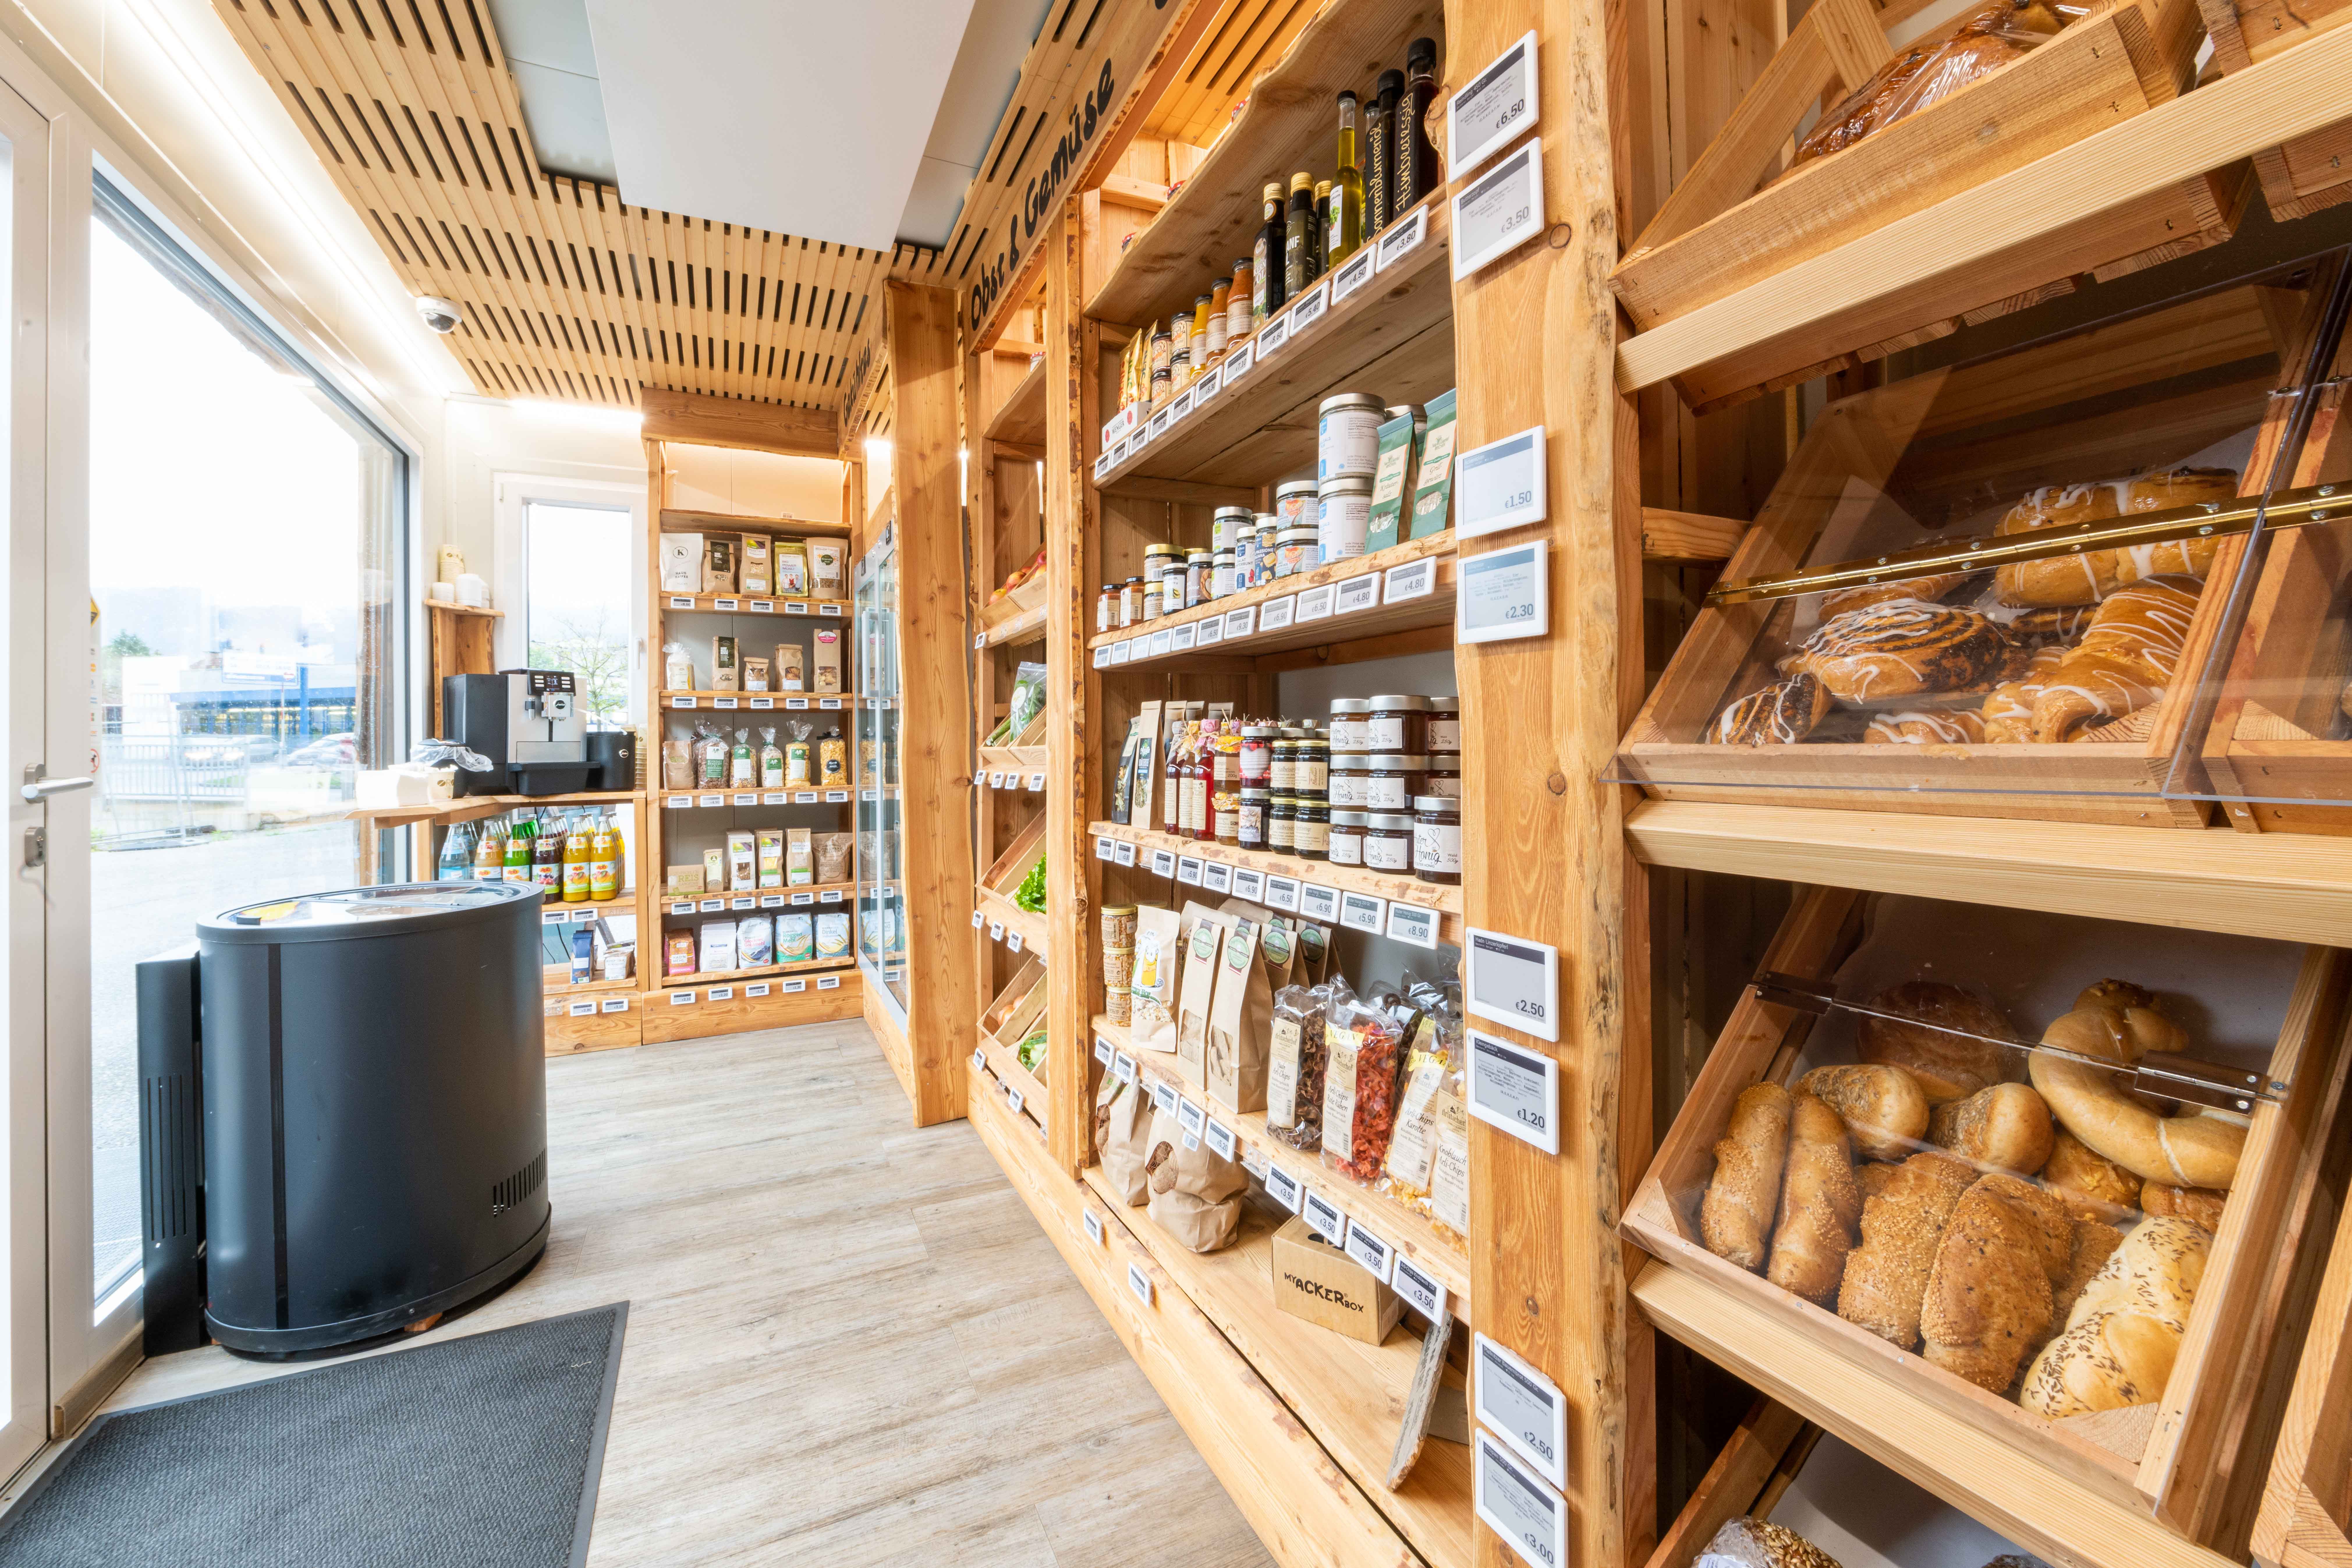 Ackerbox in Klagenfurt mit regionalen Lebensmitteln, Gebäck, Brot und weiteren Lebensmitteln angeliefert von regionalen bäuerlichen Betrieben 